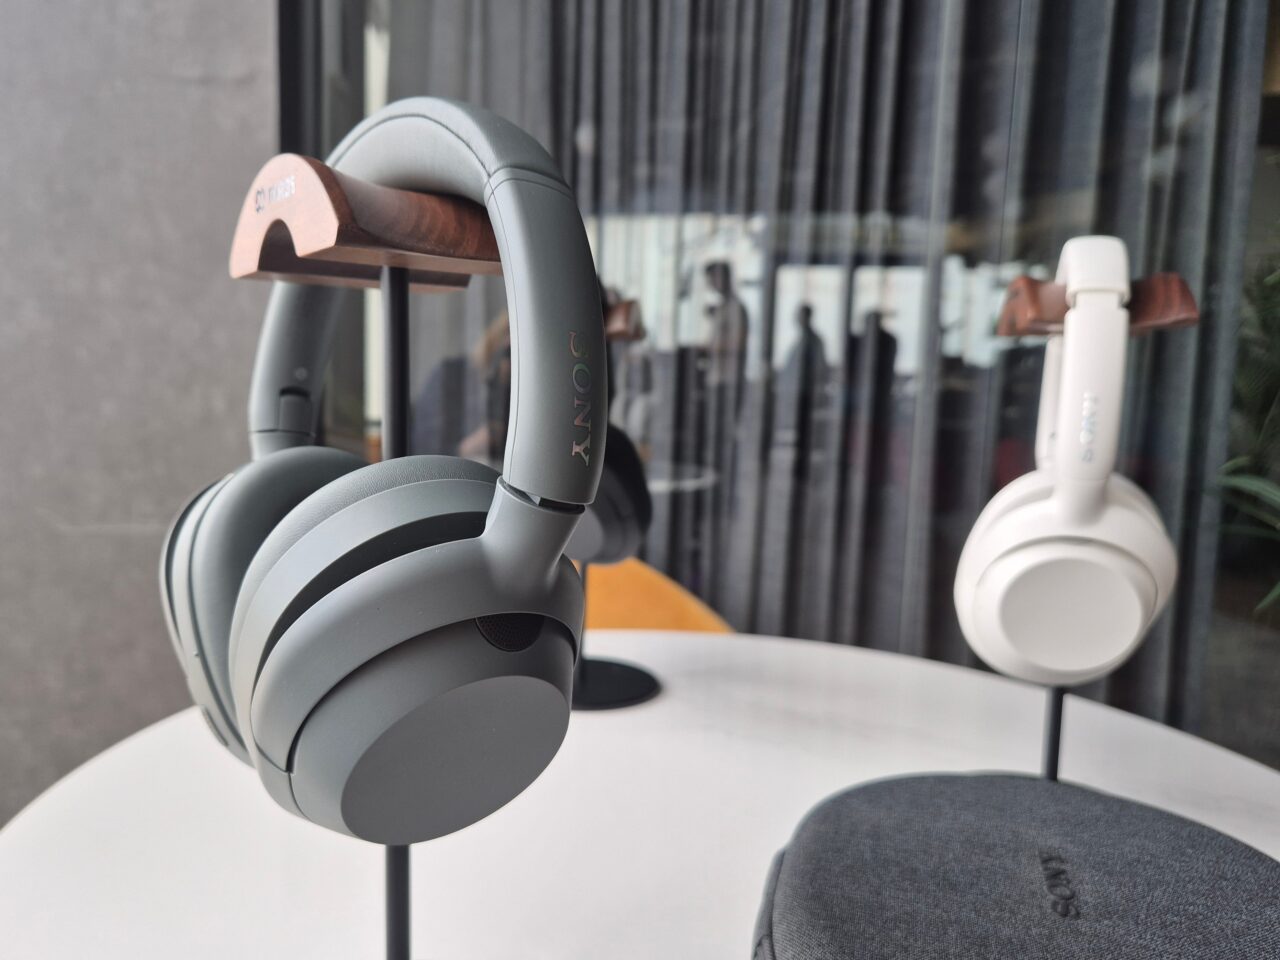 Słuchawki ULT WEAR. Nowe słuchawki bezprzewodowe Sony na stojaku